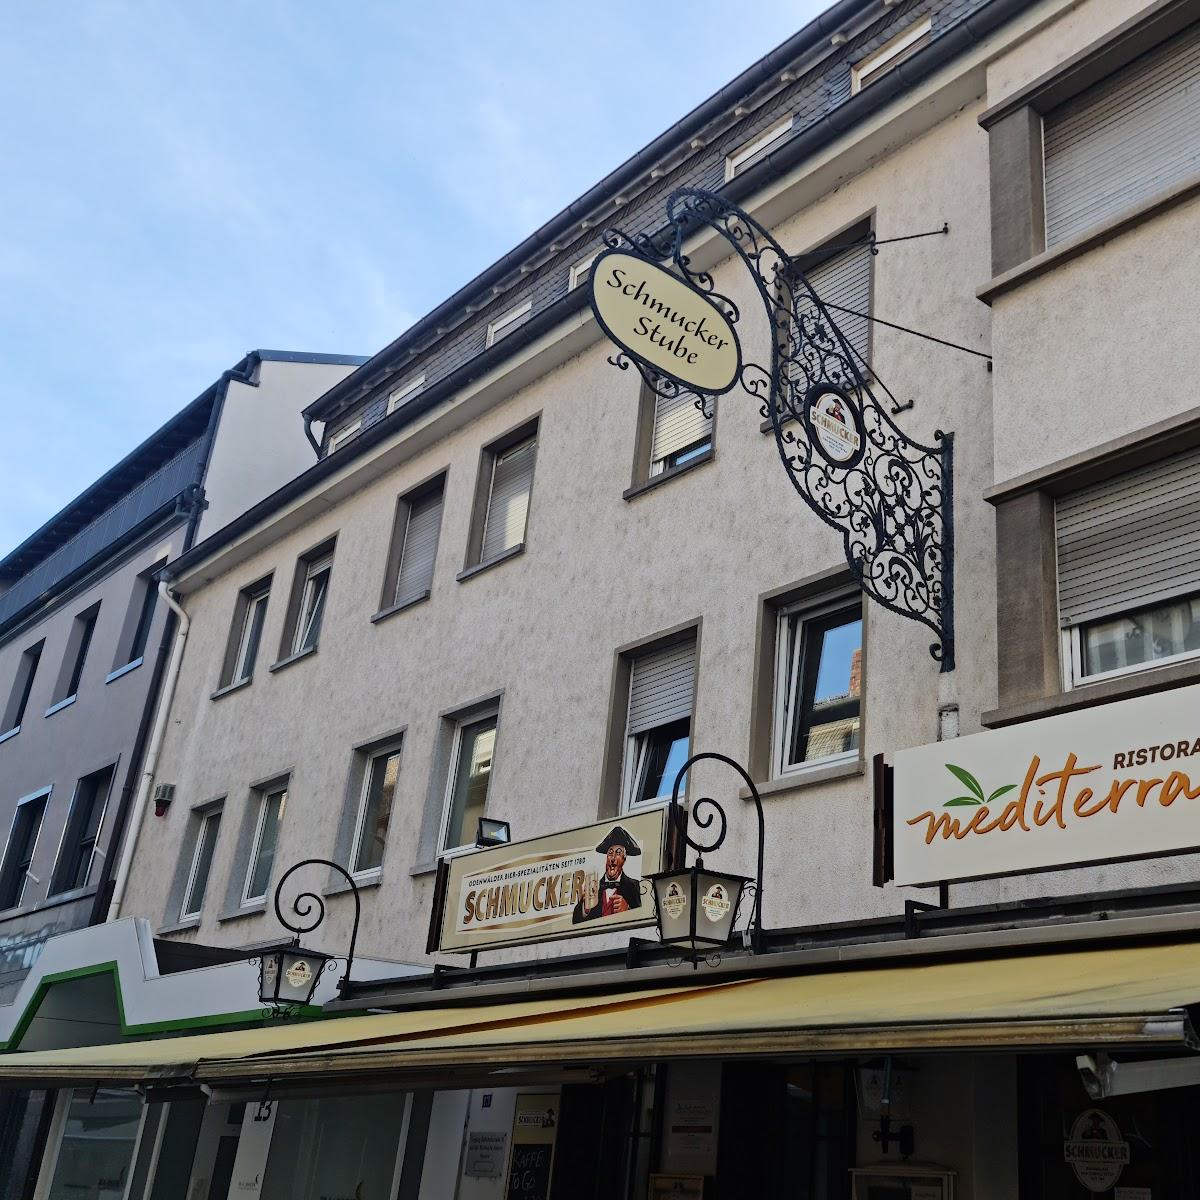 Restaurant "Mediterraneo Restaurant" in Rüsselsheim am Main